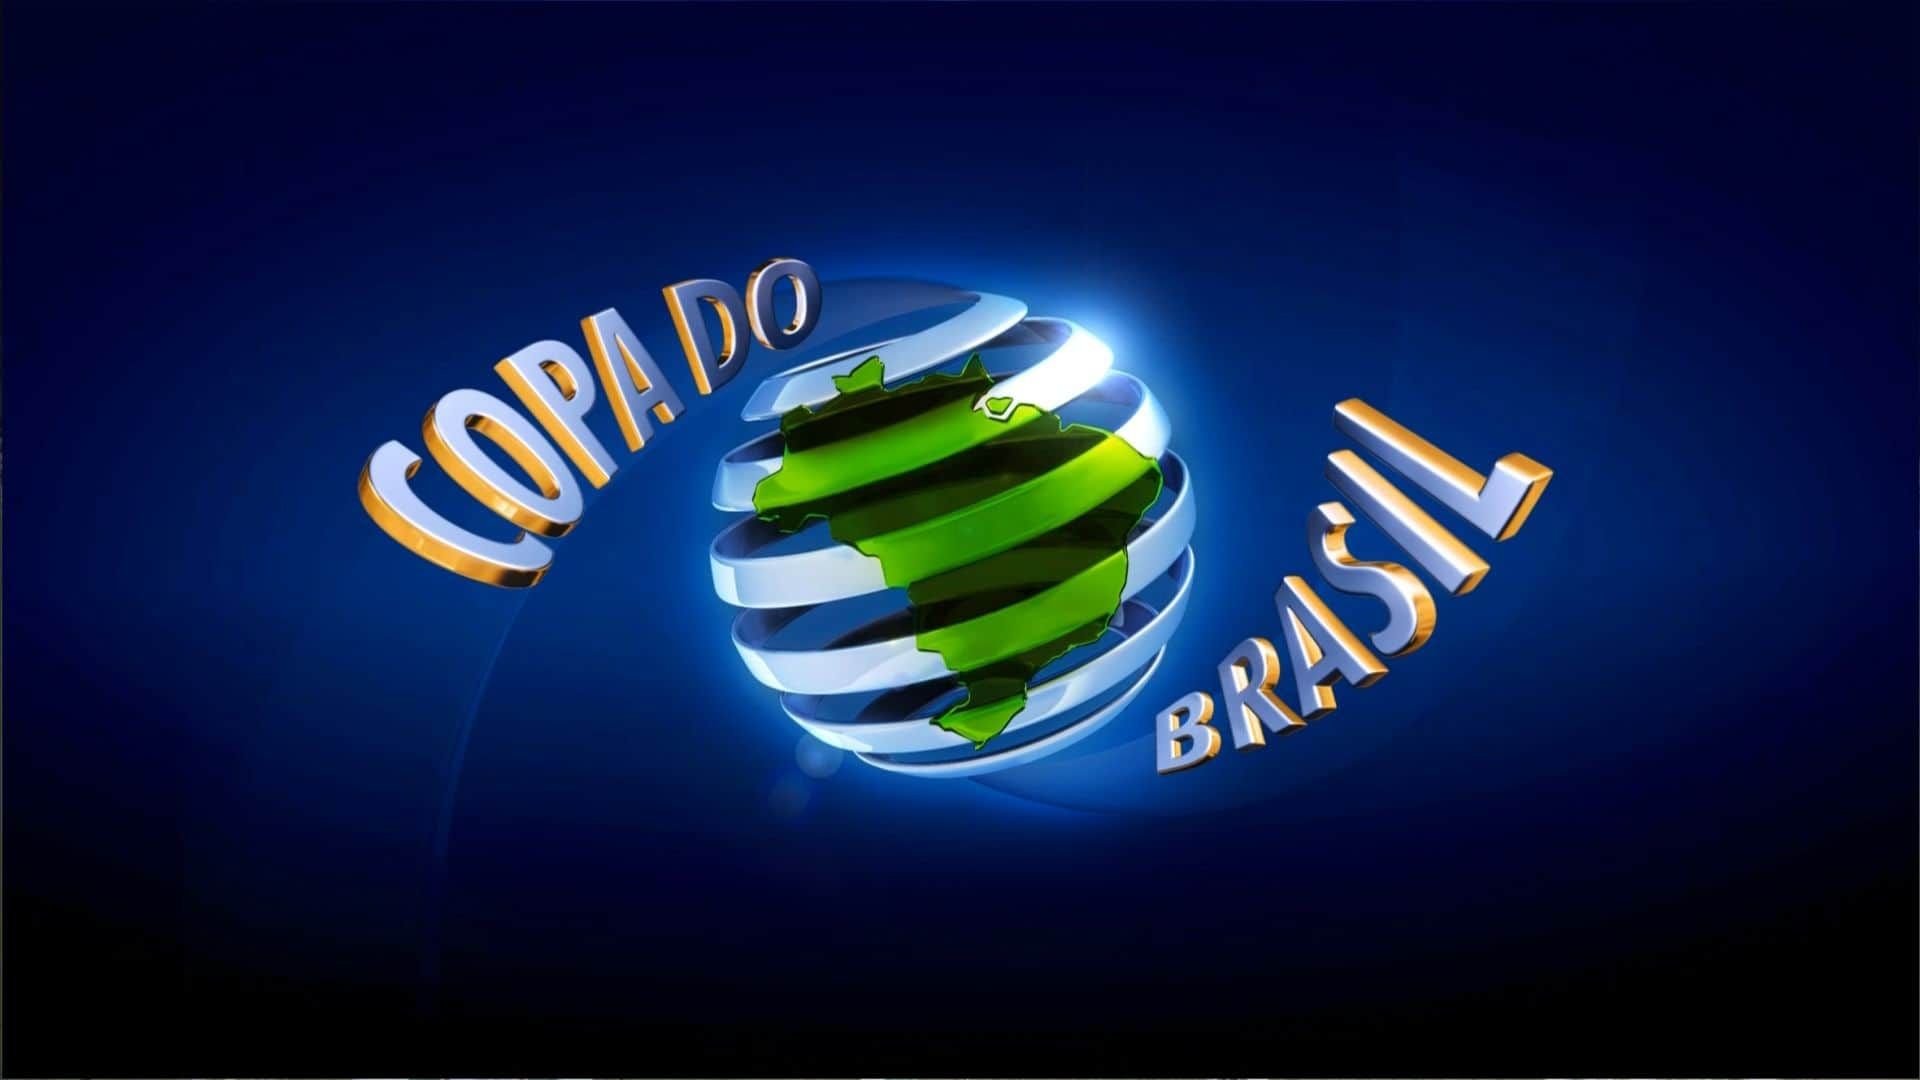 Prime Video Anuncia Transmissão dos Jogos de Volta da Copa do Brasil 2023  com Shows de Belo e Pixote - Bastidores - O Planeta TV